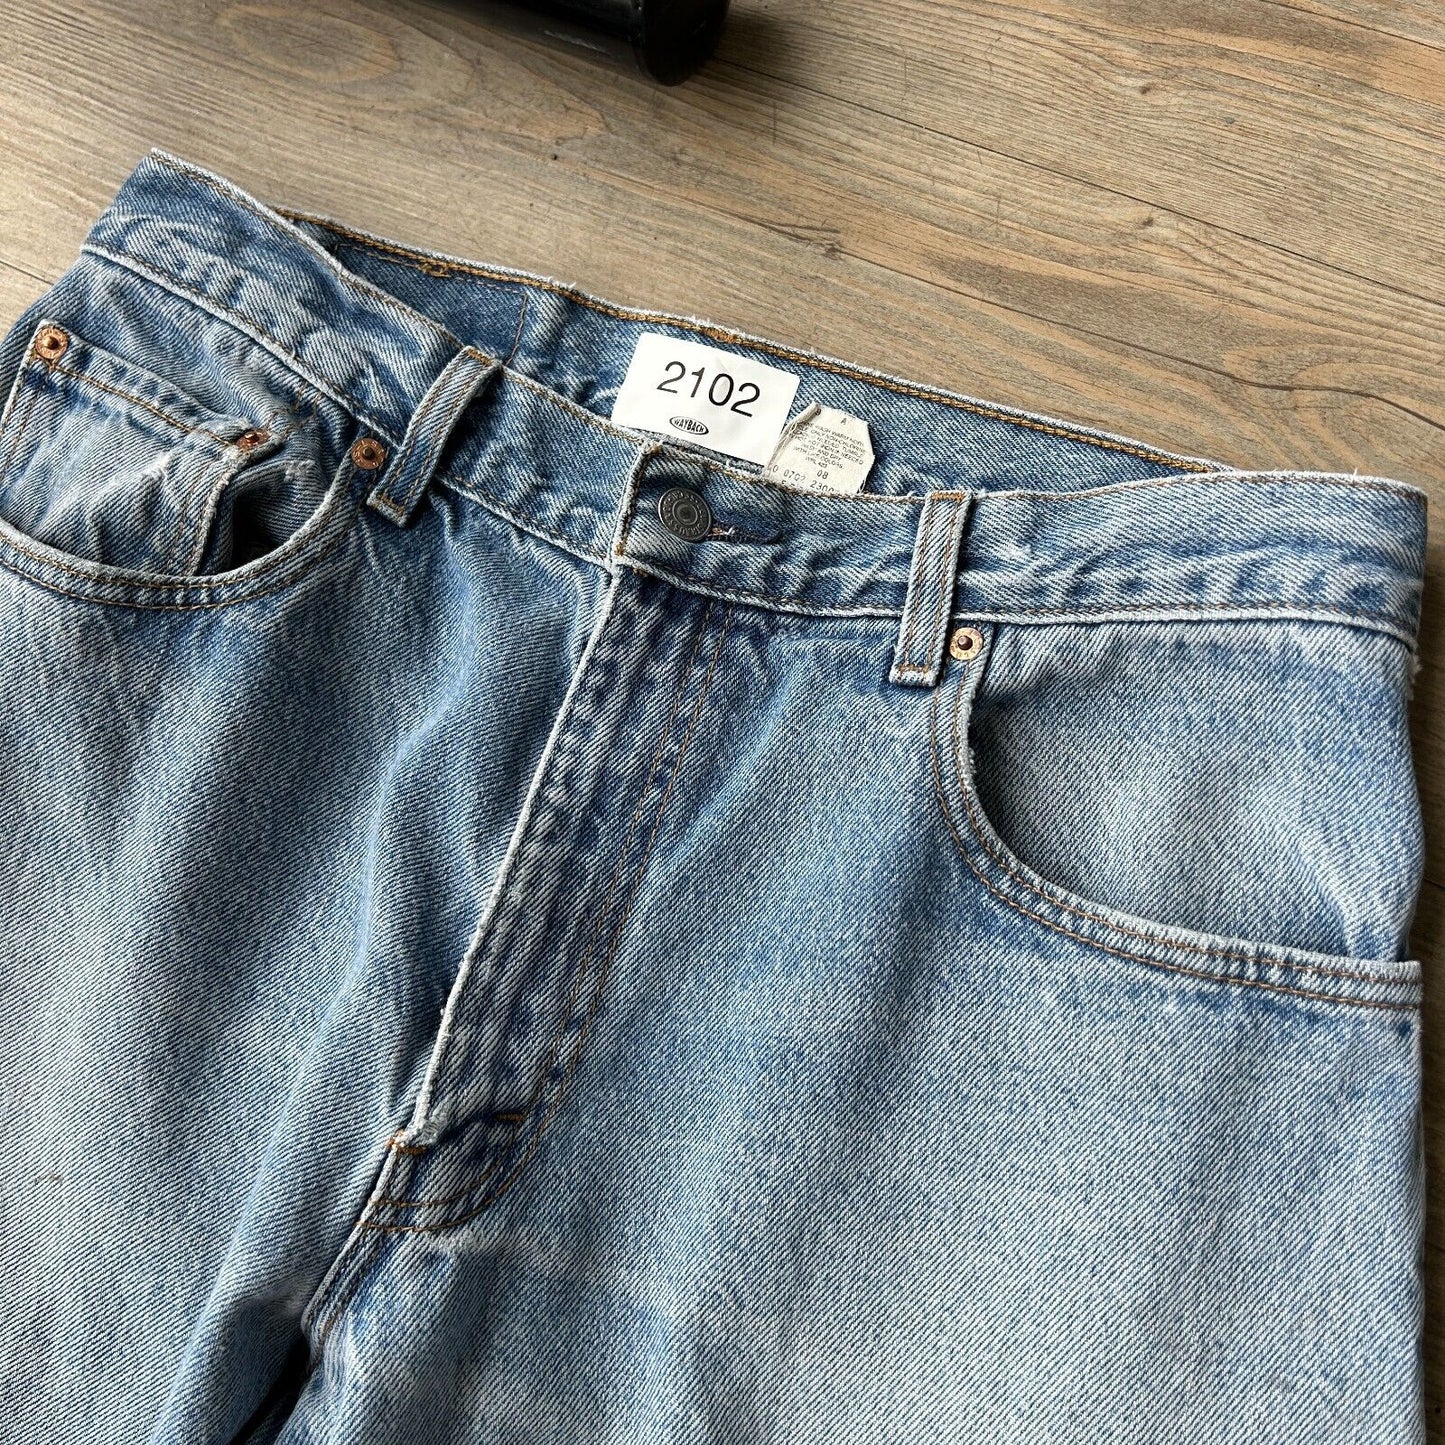 VINTAGE 90s | LEVIS 560 Faded Loose Fit Jeans Pants sz W32 L32